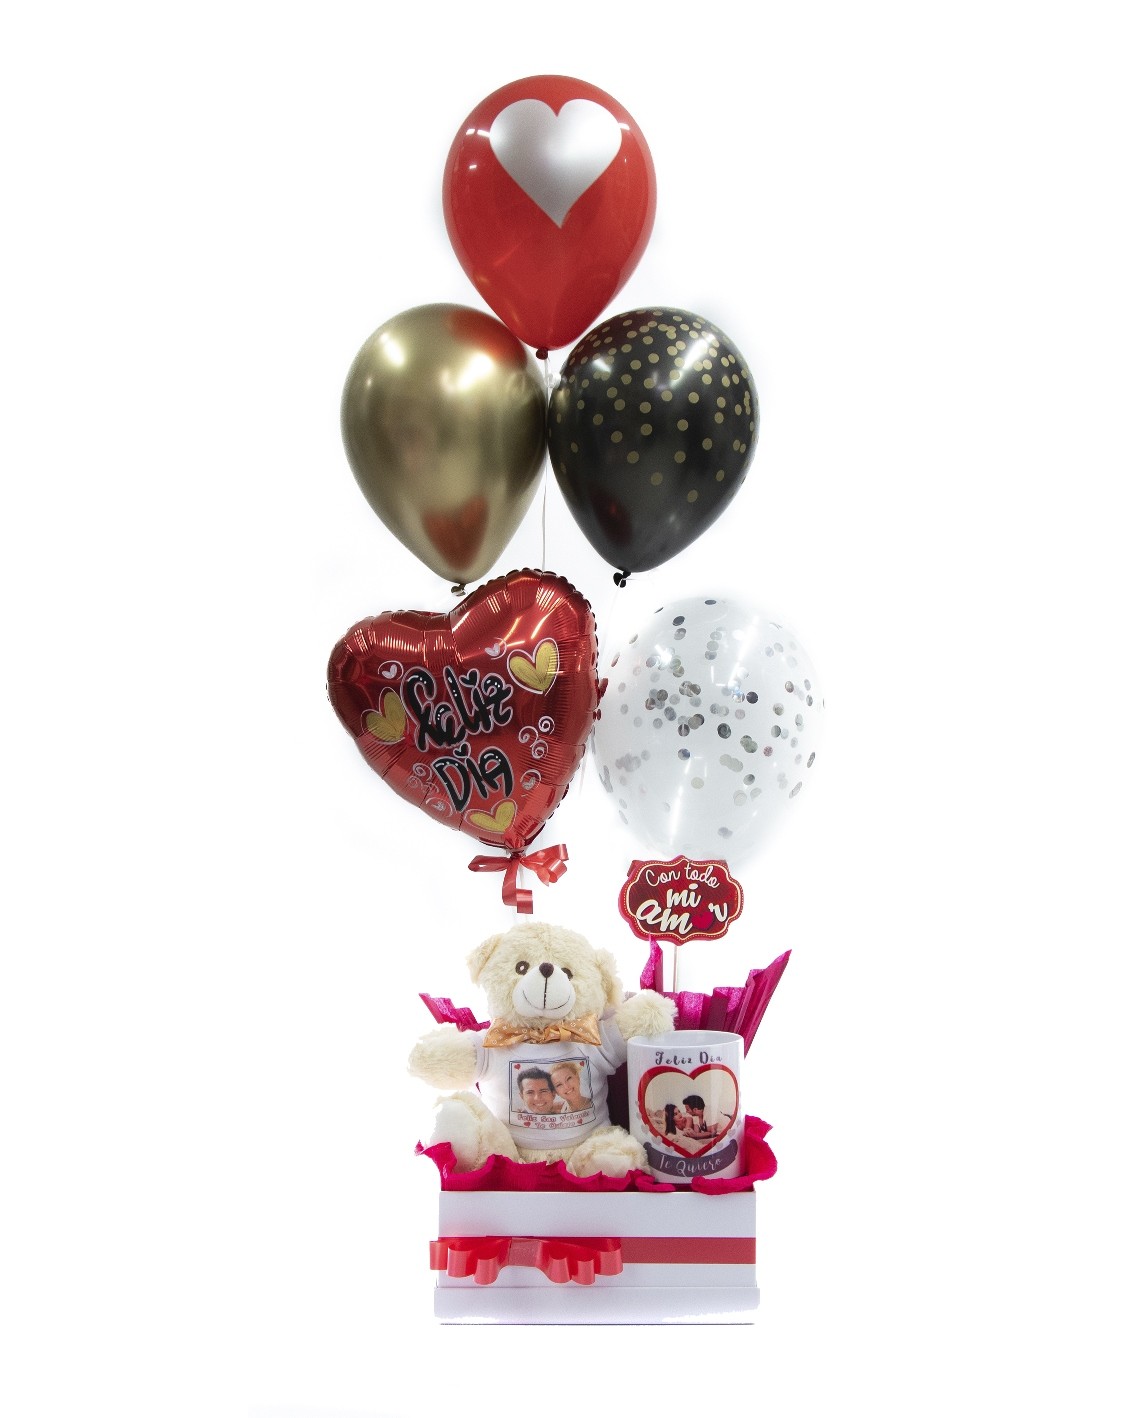 Celebra tu San Valentín más romántico con la decoración de Globos Fantasía  y sus originales cestas para regalar